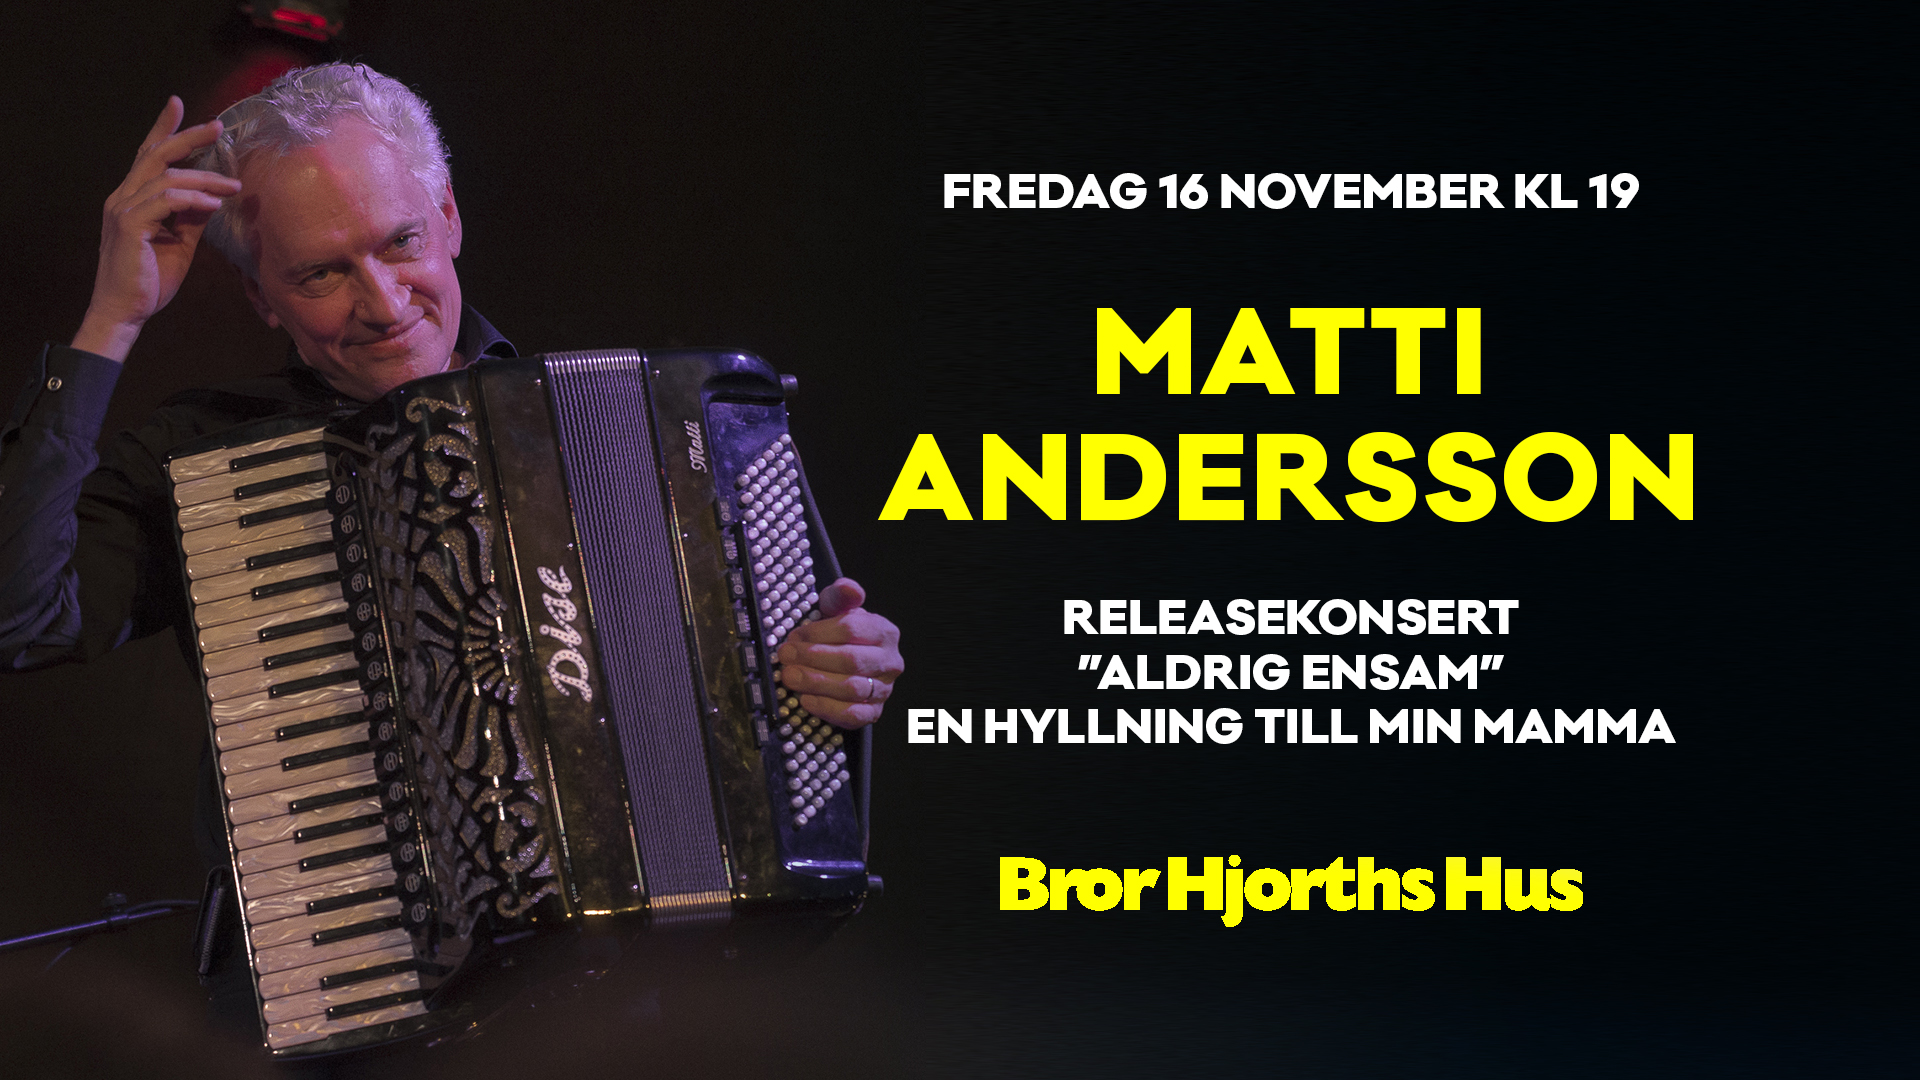 Bild på Matti Andersson med accordeon (dragspel) samt text om konserten